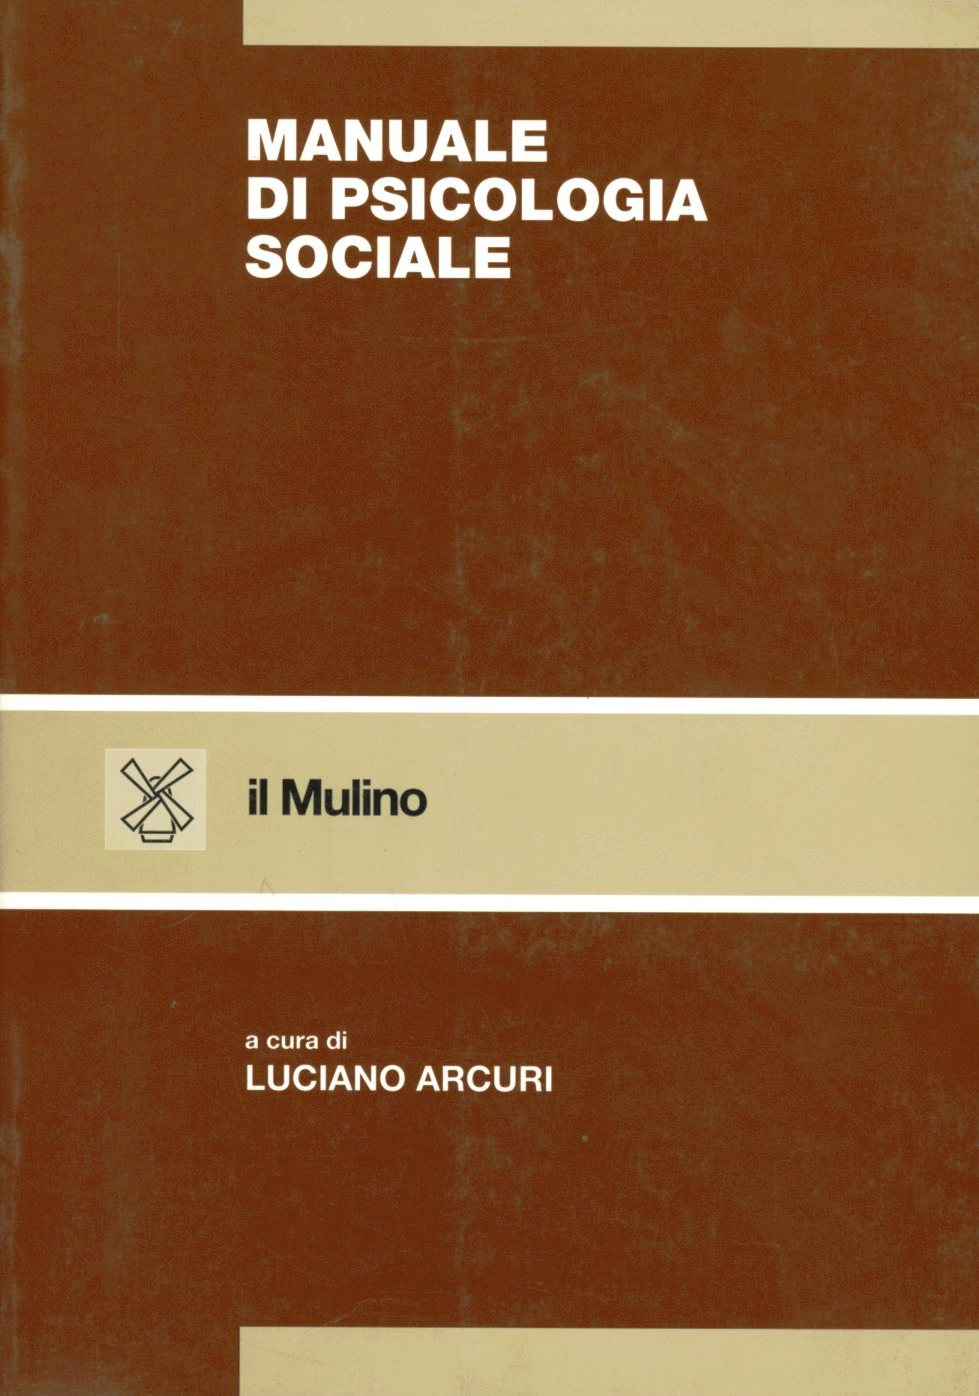 Image of Manuale di psicologia sociale